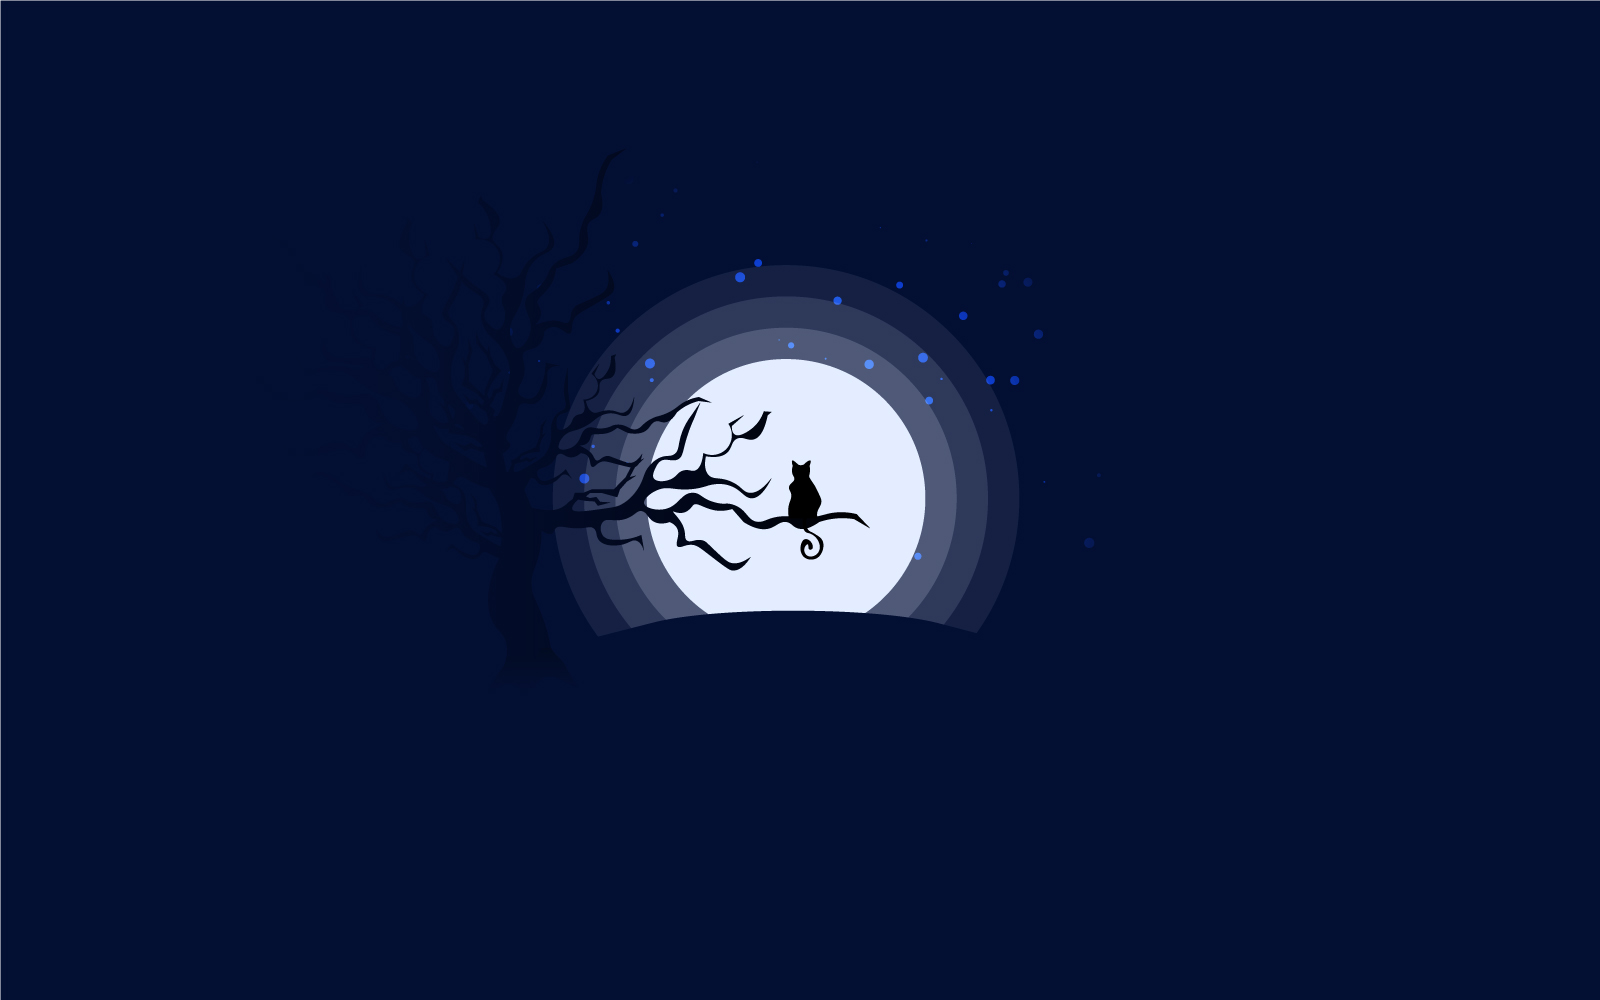 Cat Silhouette Under Moonlight - Illustration